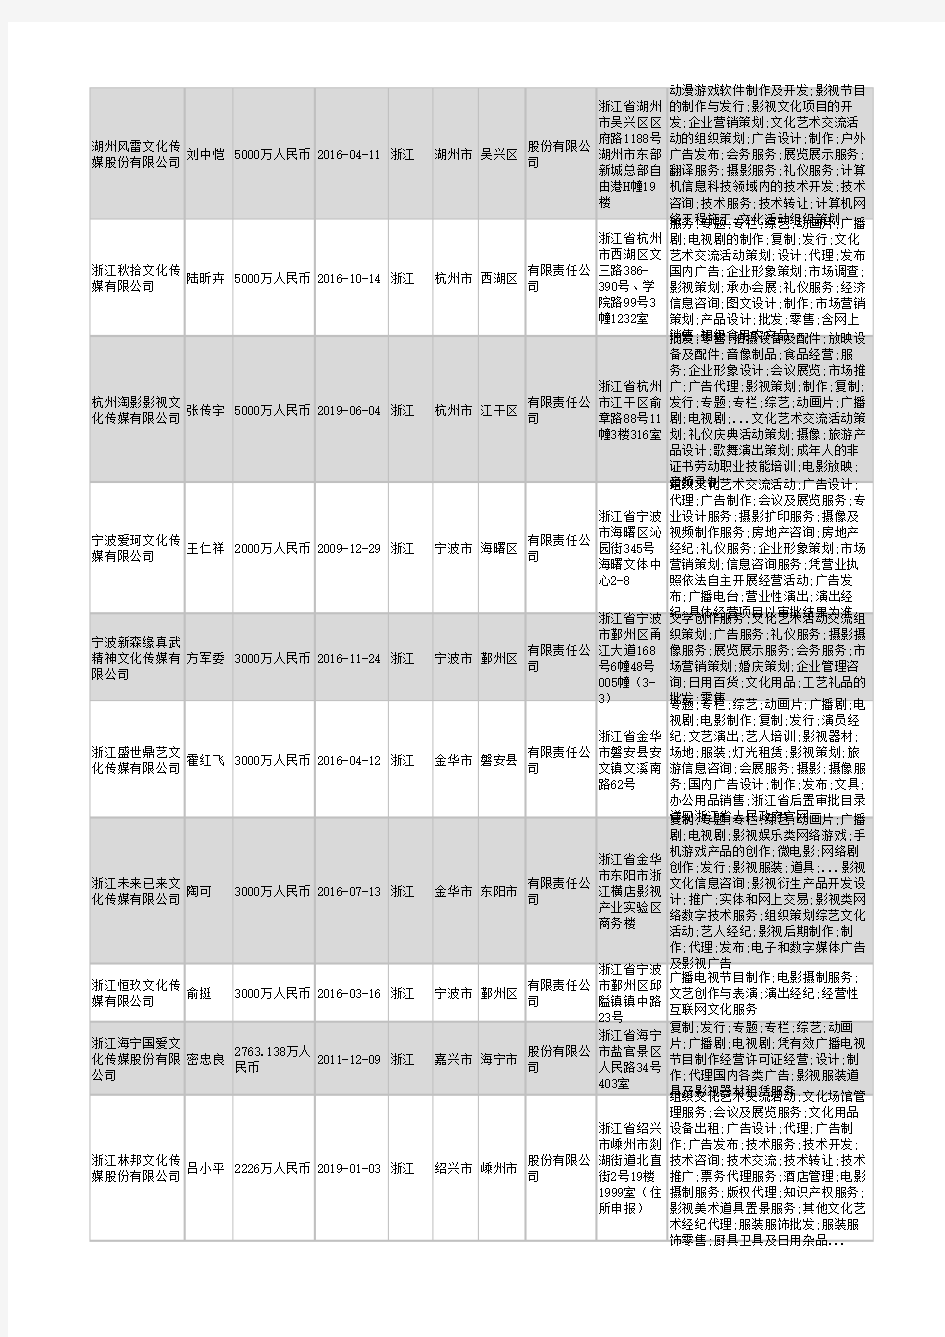 2021年浙江省文化传媒公司企业名录2443家